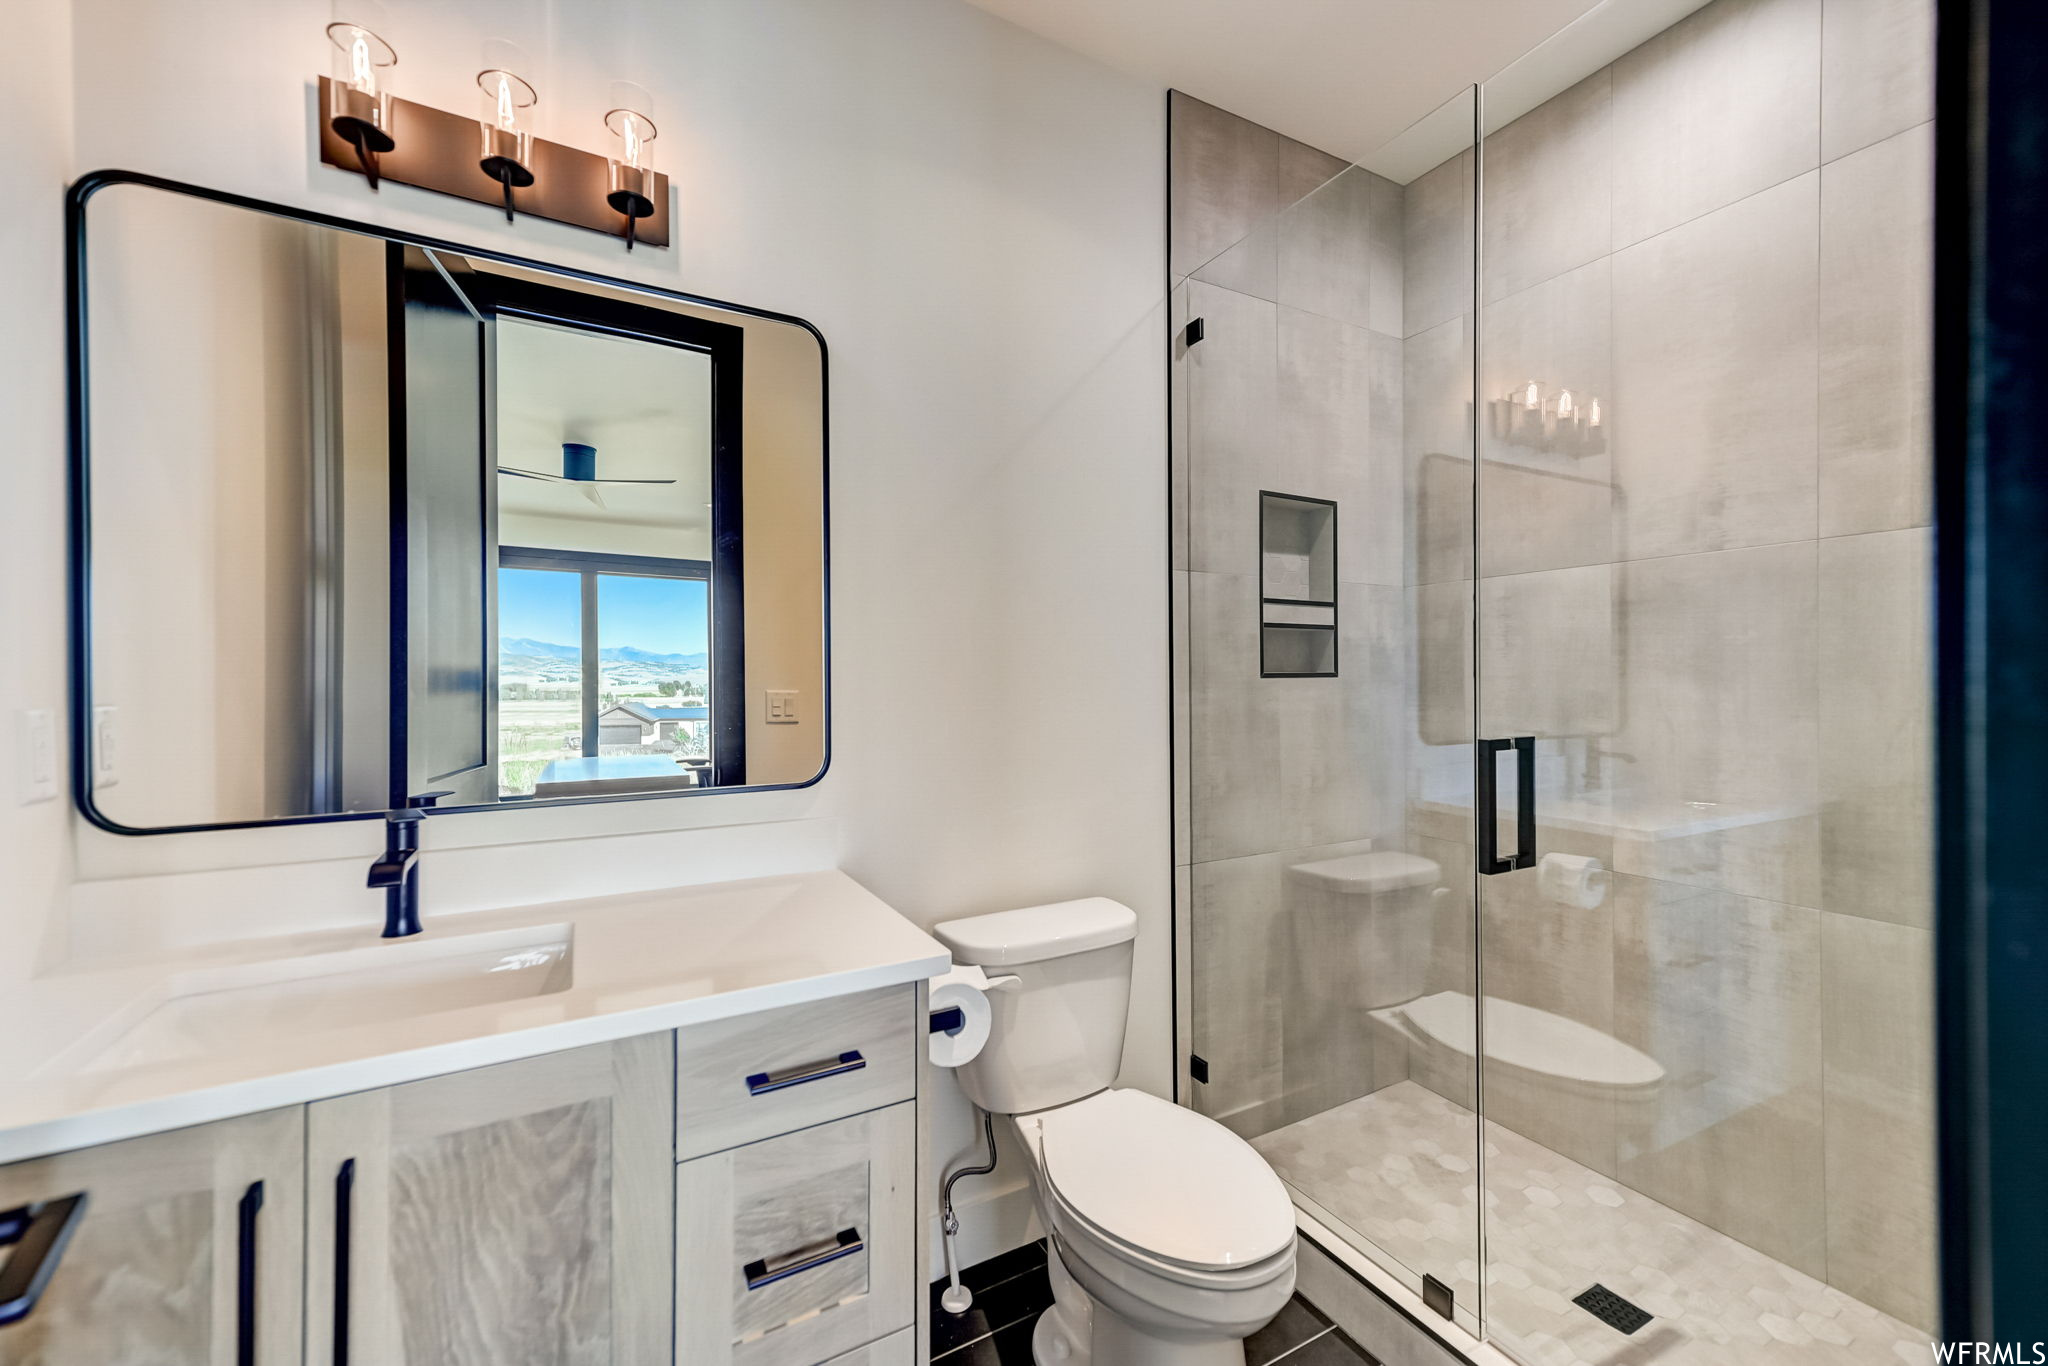 Bathroom featuring vanity, walk in shower, tile flooring, and toilet